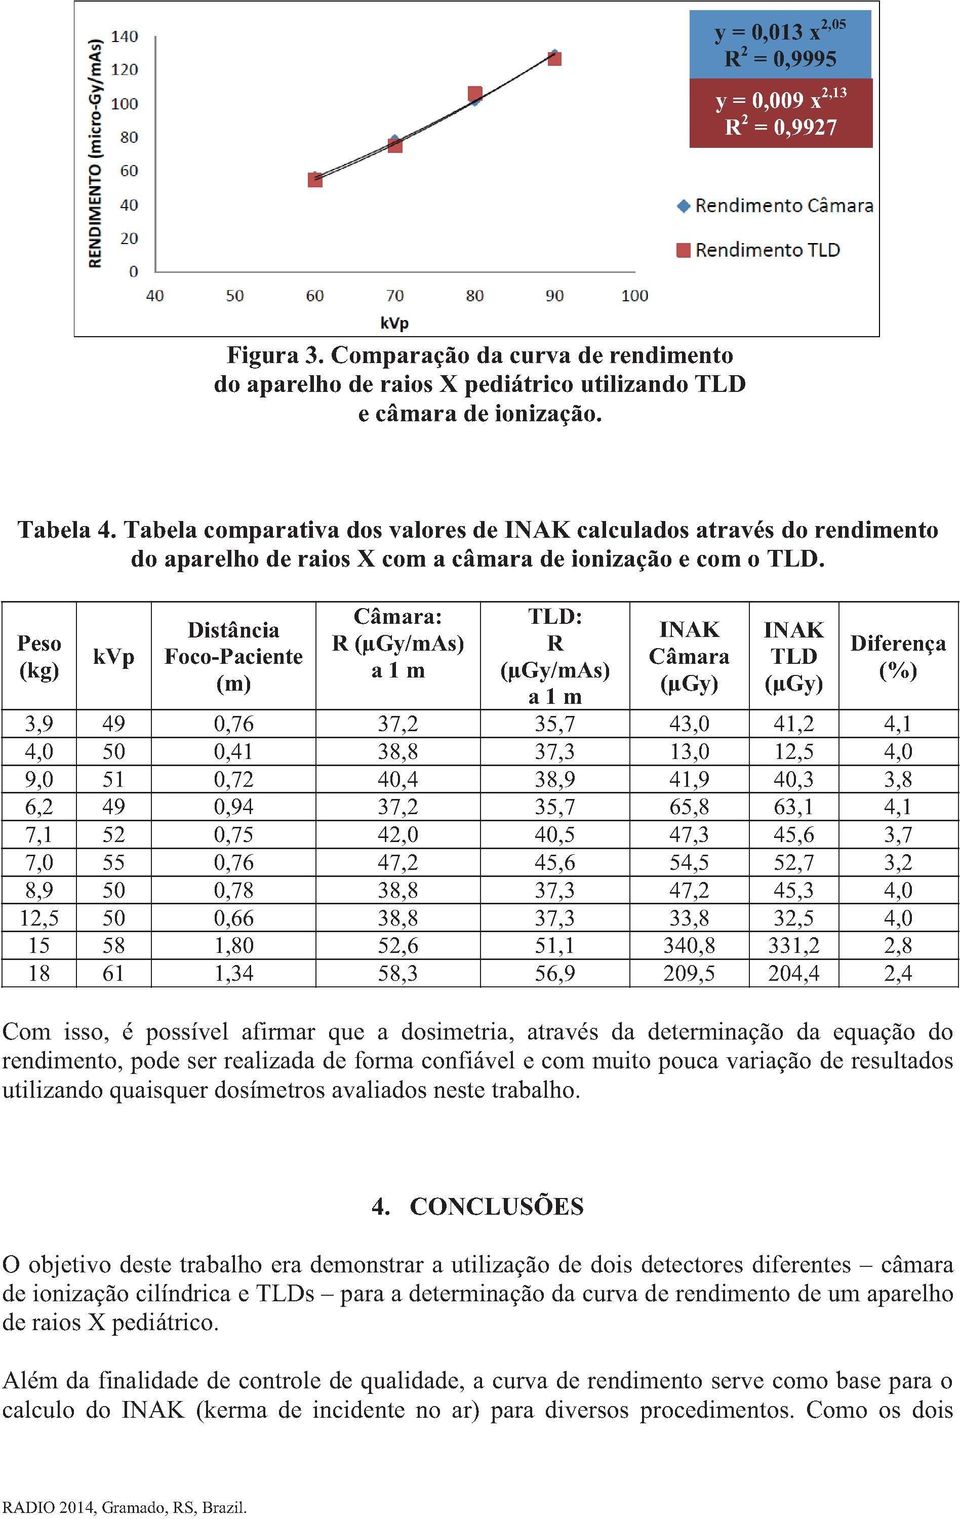 Tabela comparativa dos valores de INAK calculados através do rendimento do aparelho de raios X com a câmara de ionização e com o TLD.